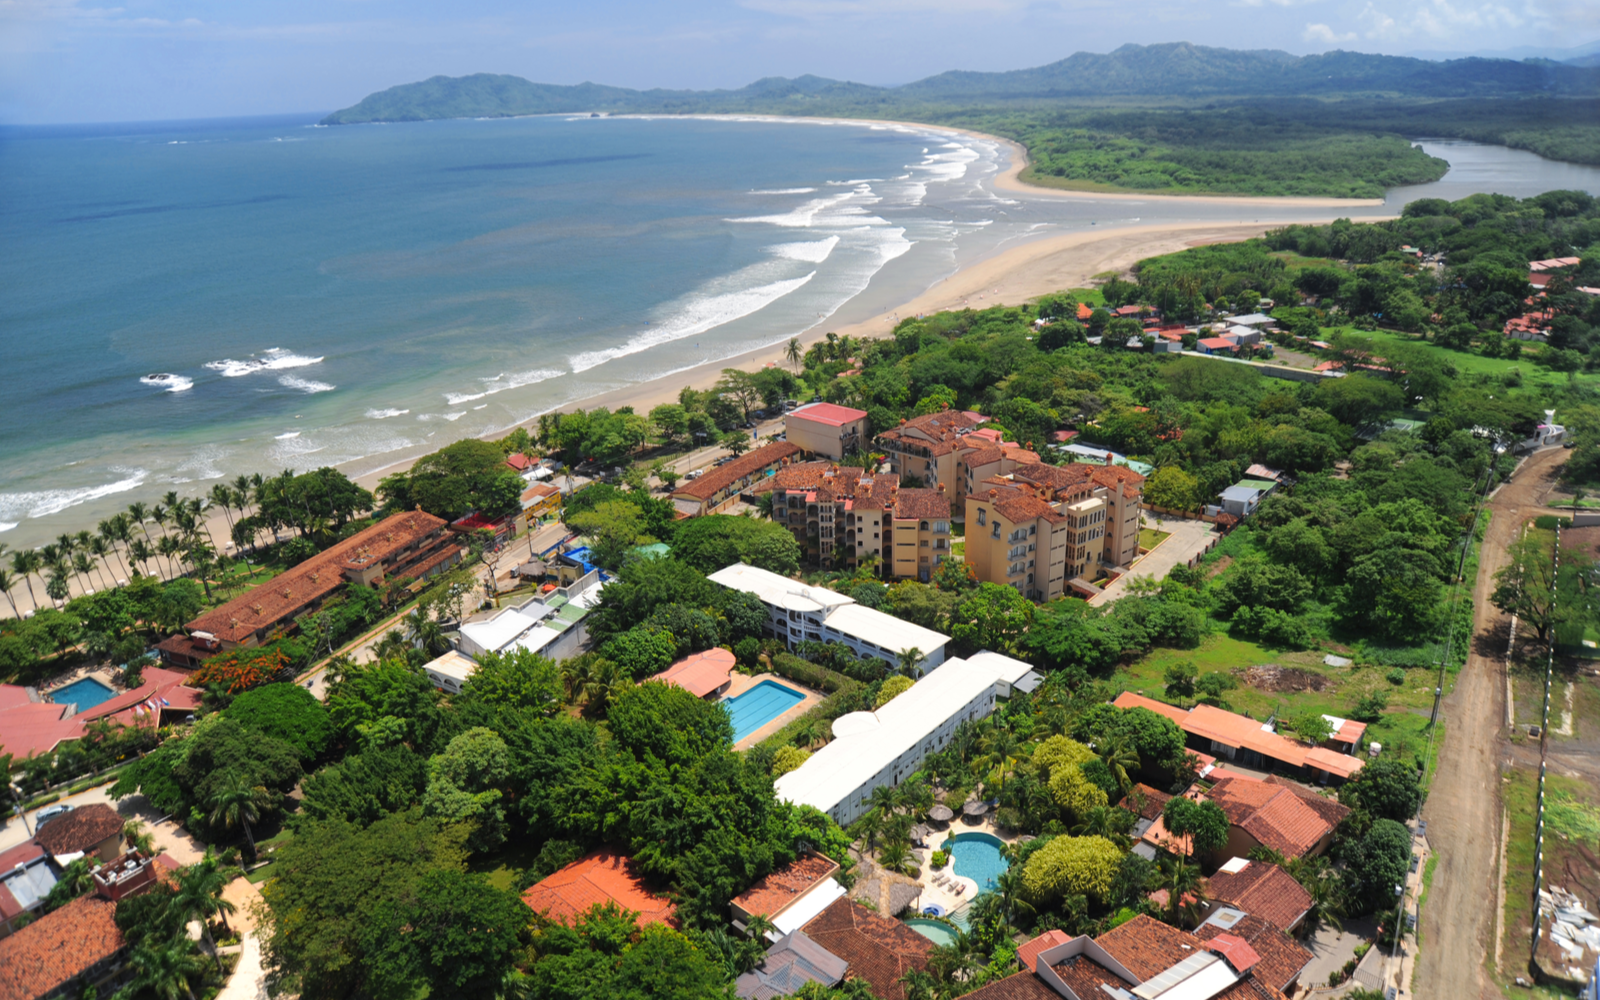 15 Best All-Inclusive Resorts in Costa Rica in 2022